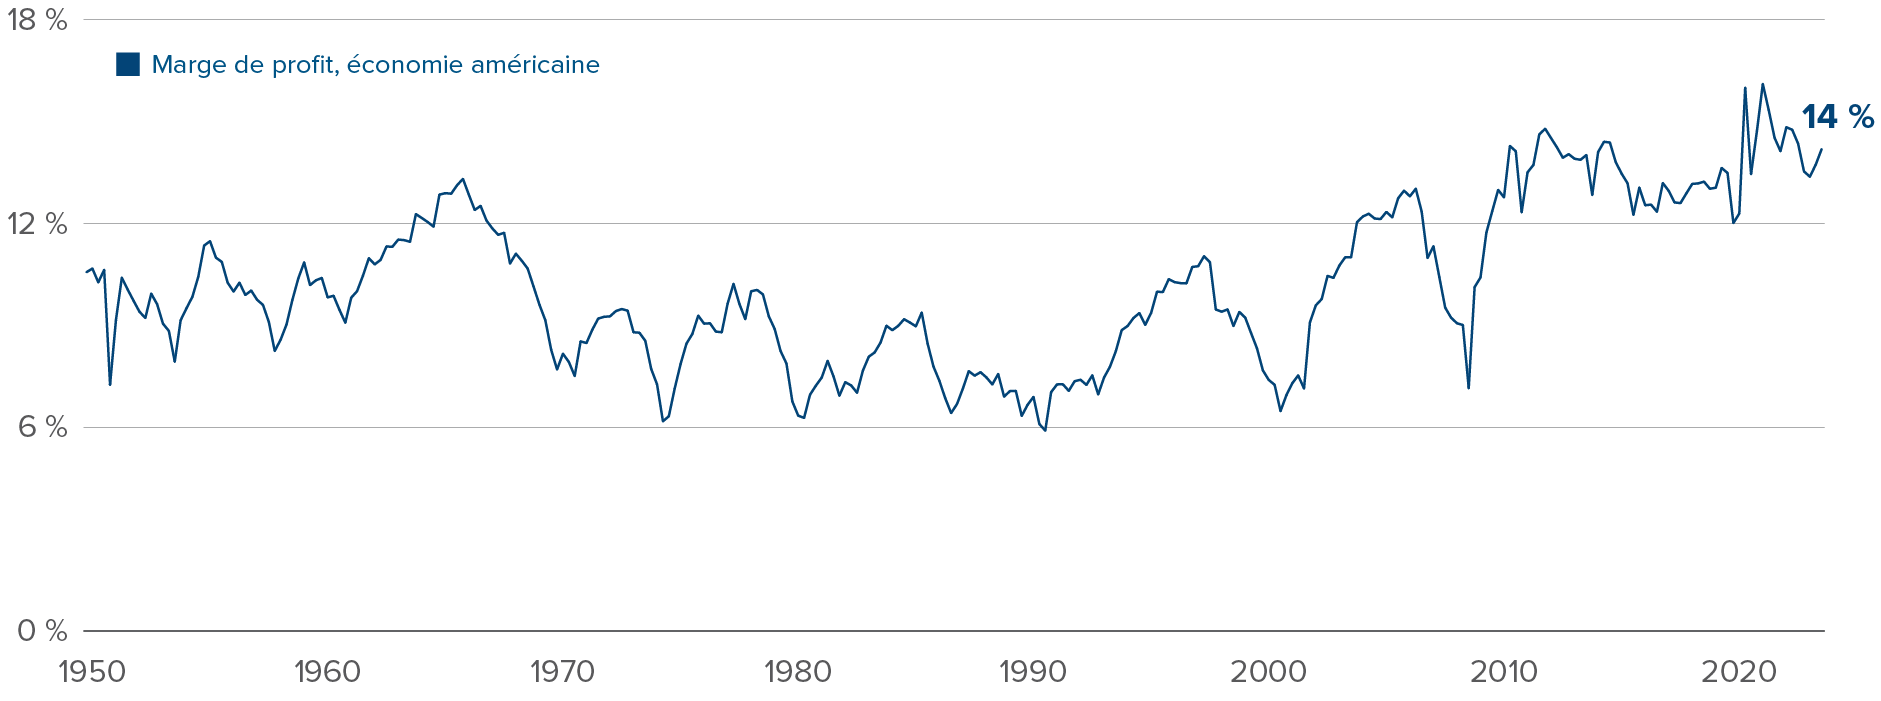 Graphique : Marge bénéficiaire de l’économie américaine, de 1950 à aujourd’hui.